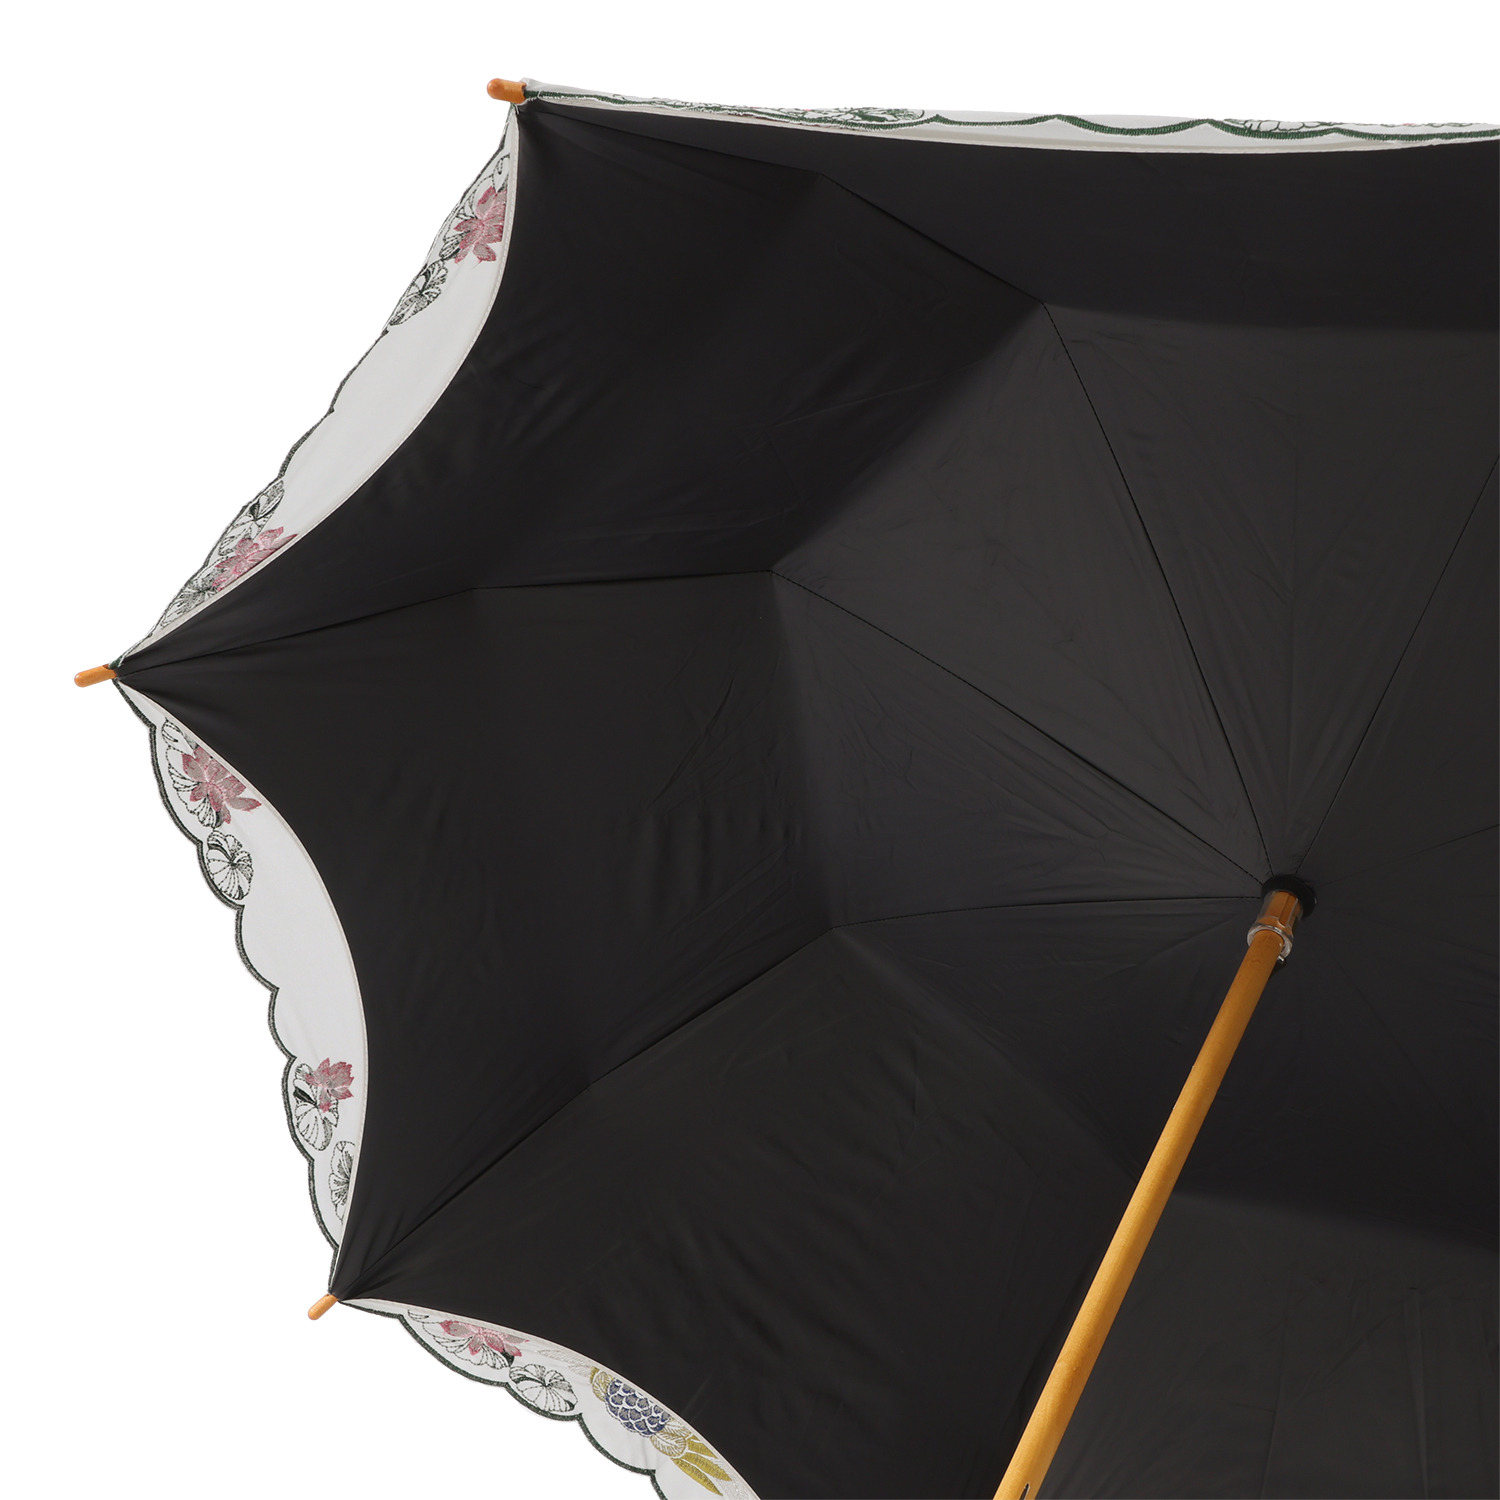 シノワズリーモダン 孔雀刺しゅう かわず張り 晴雨兼用長日傘